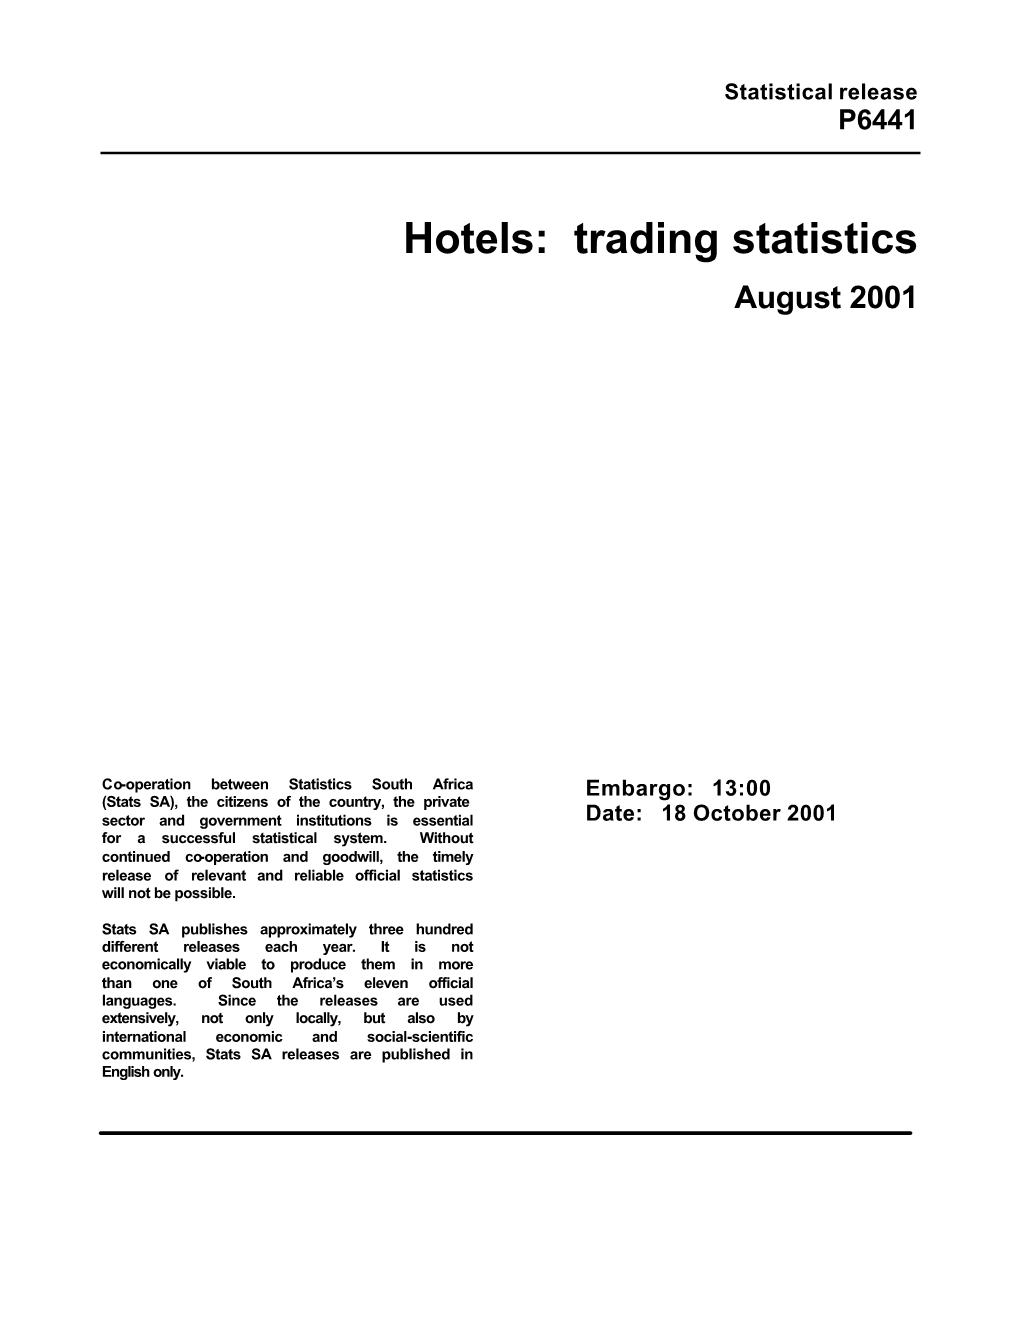 Hotels: Trading Statistics